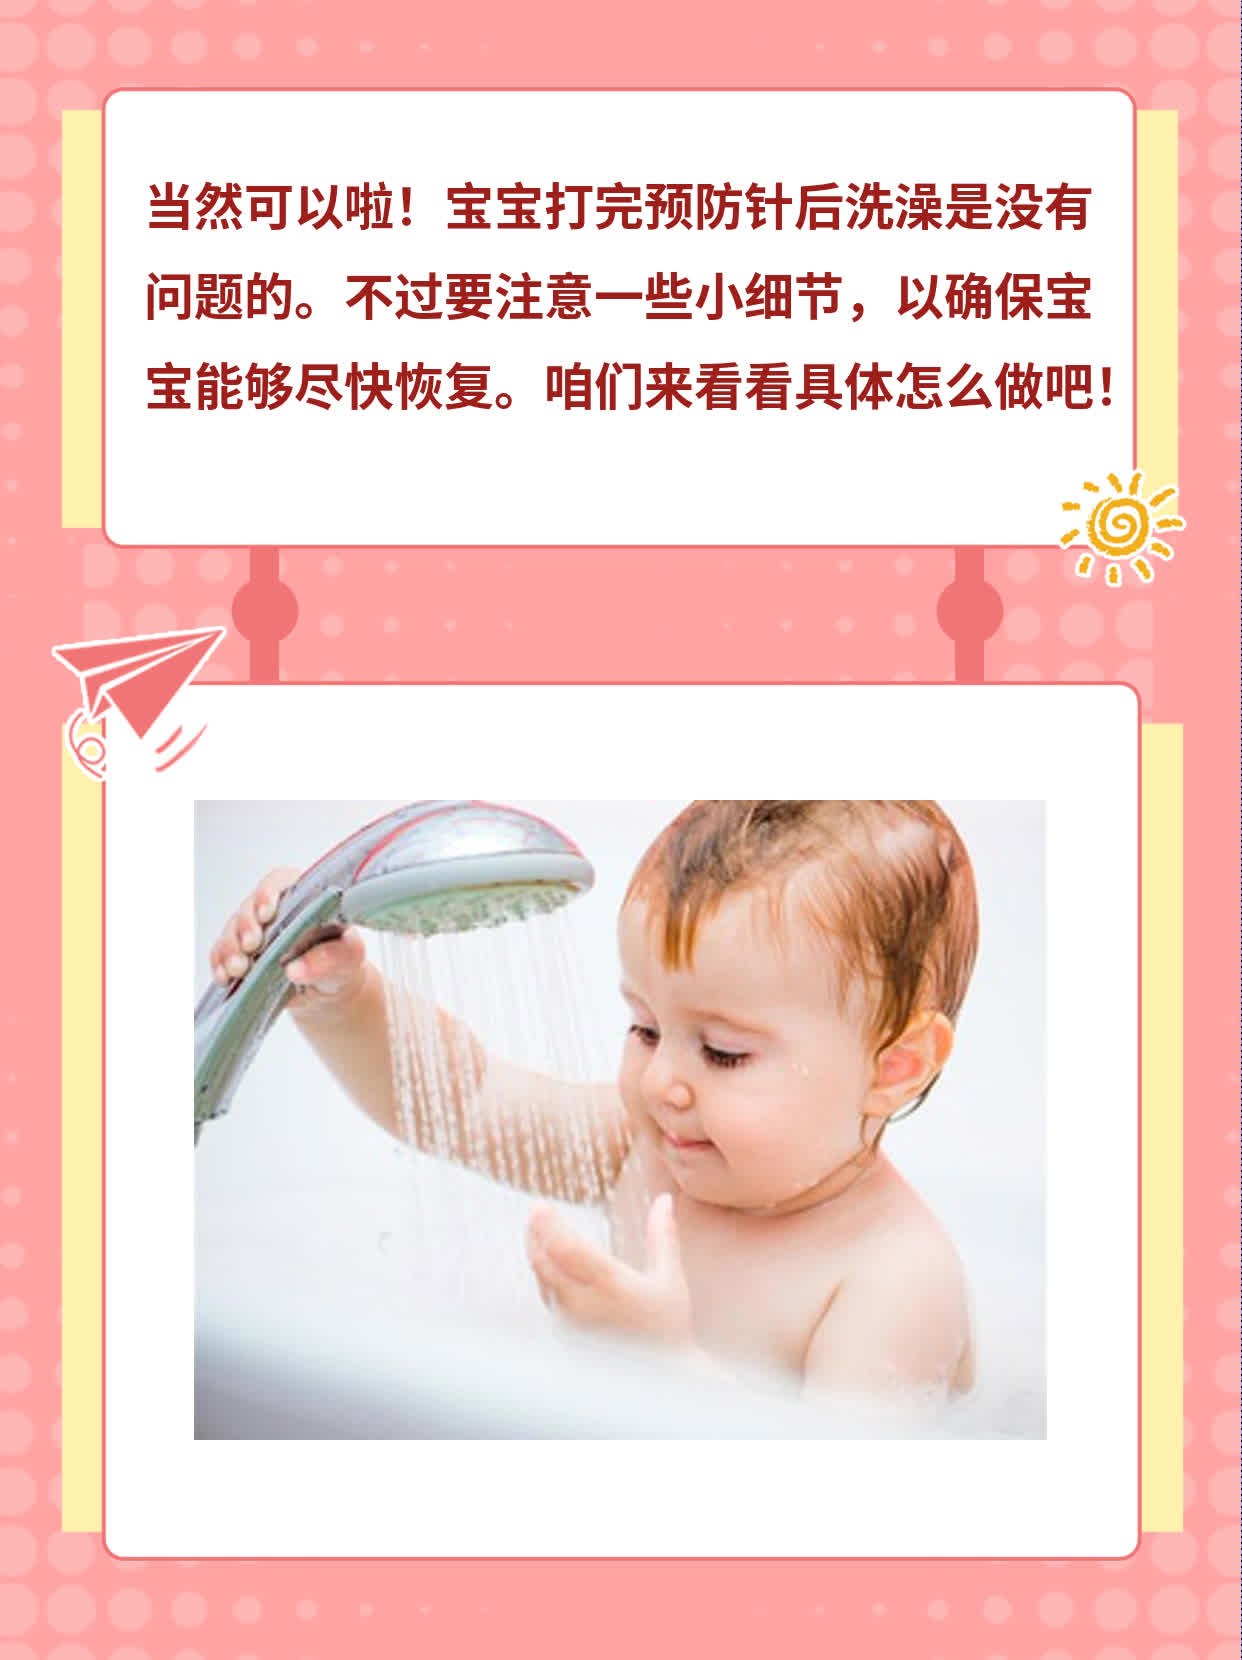 打完预防针后给宝宝洗澡的影响